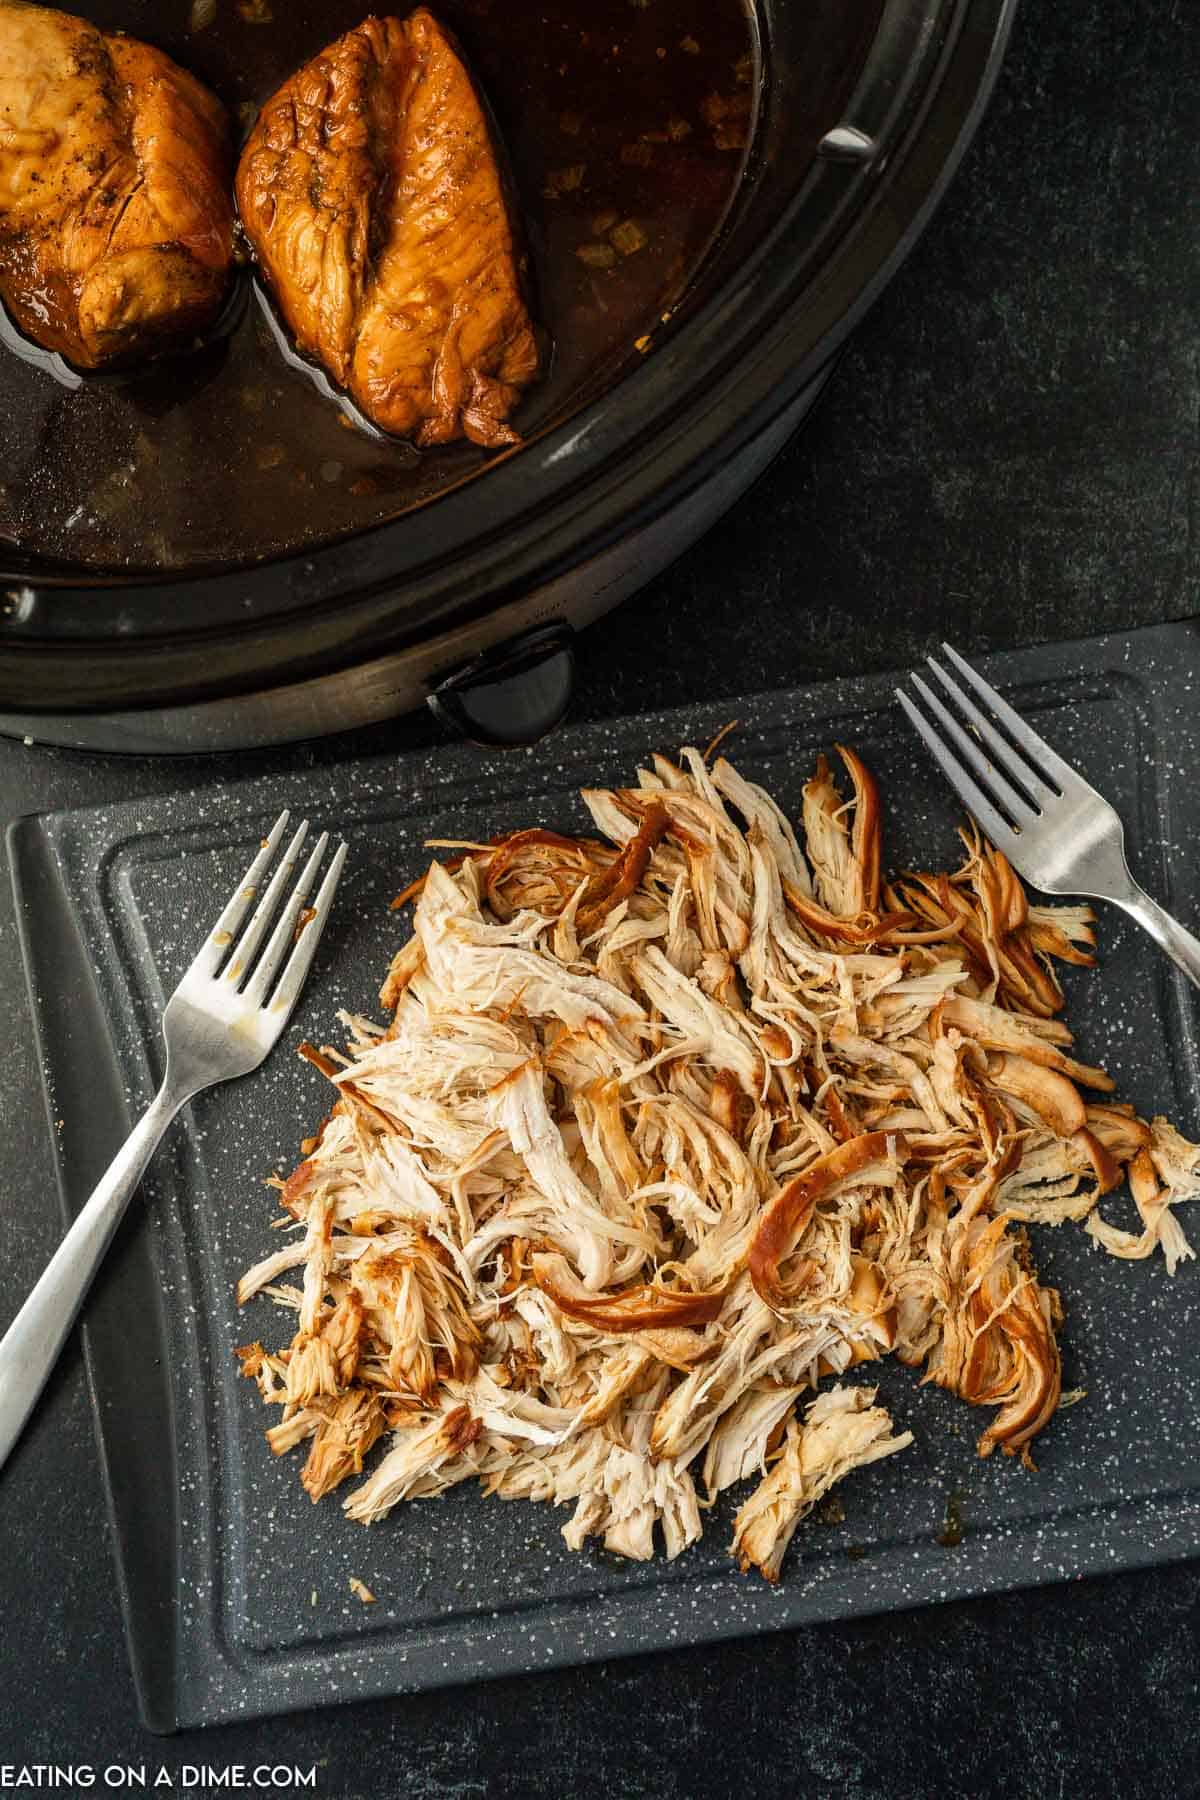 Shredded chicken on a cutting board